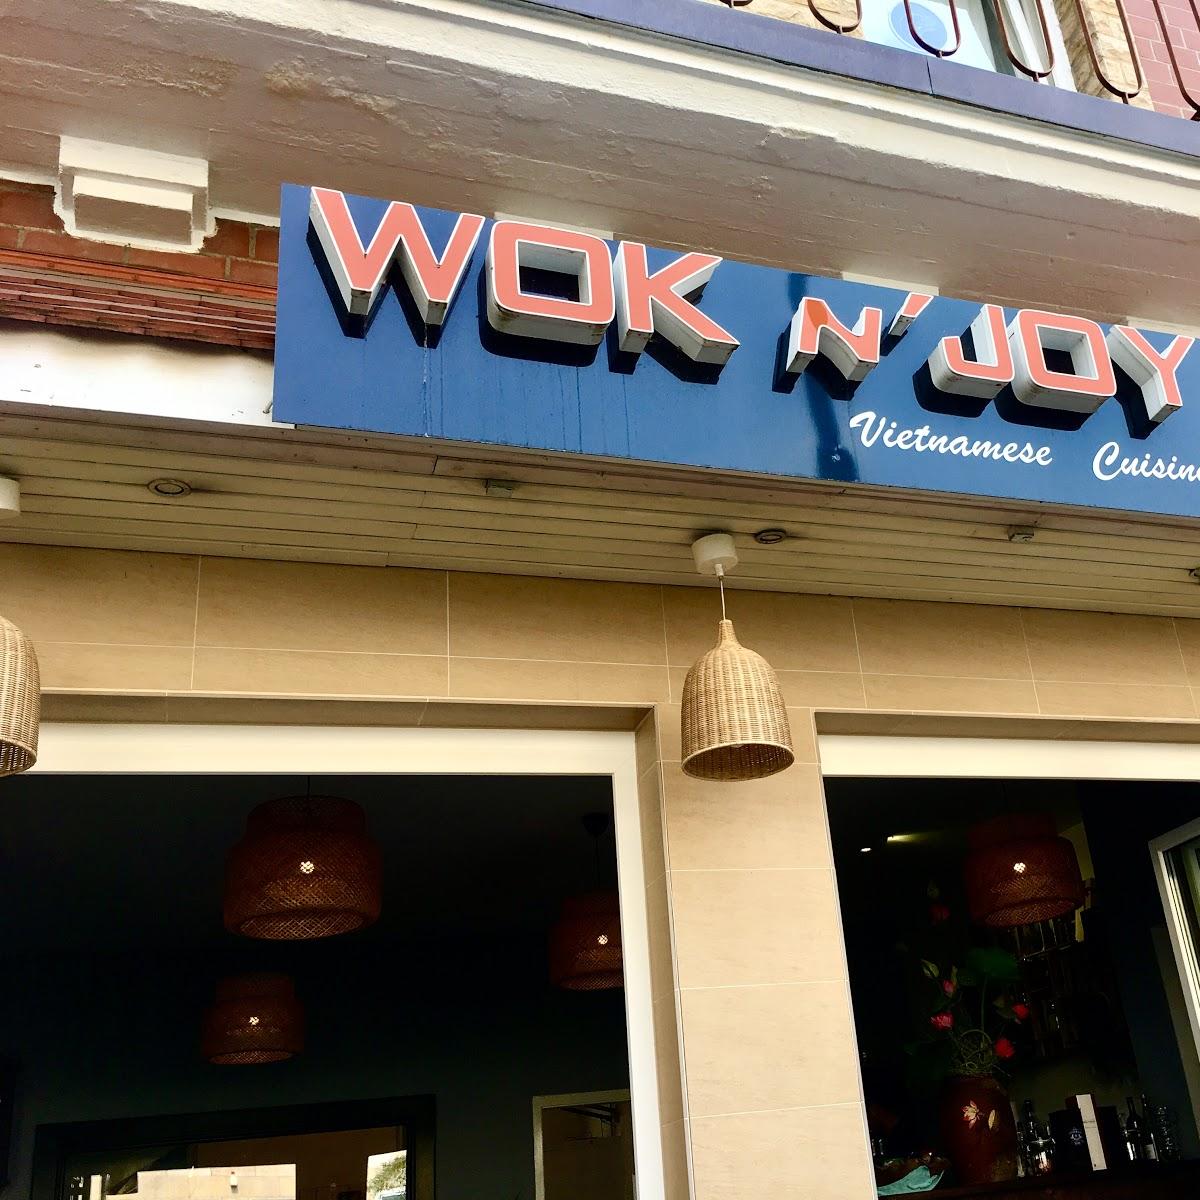 Restaurant "Wok